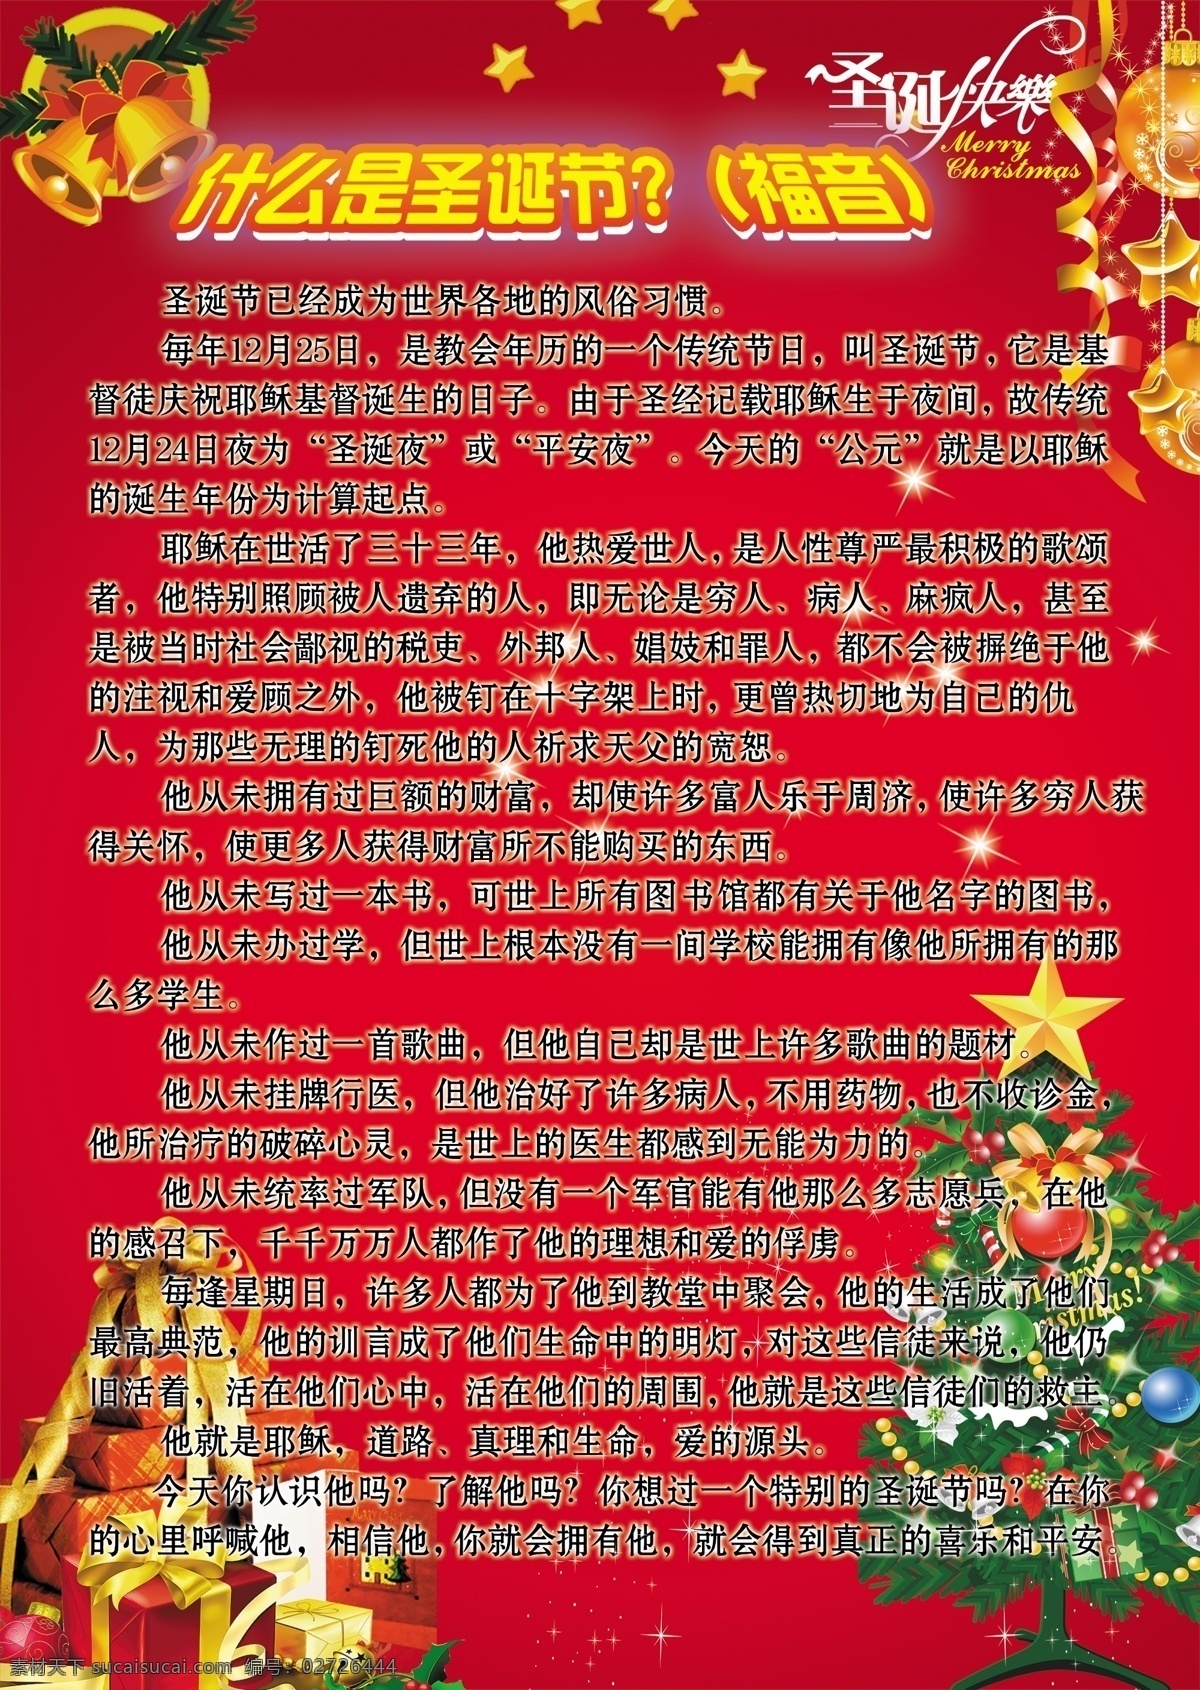 分层 风铃 广告设计模板 红色底 礼品 铃铛 圣诞节 圣诞节海报 圣诞节展板 圣诞节图片 圣诞快乐 艺术 字 圣诞树 黄色星星 星星 圣诞礼物 展板模板 源文件 其他海报设计